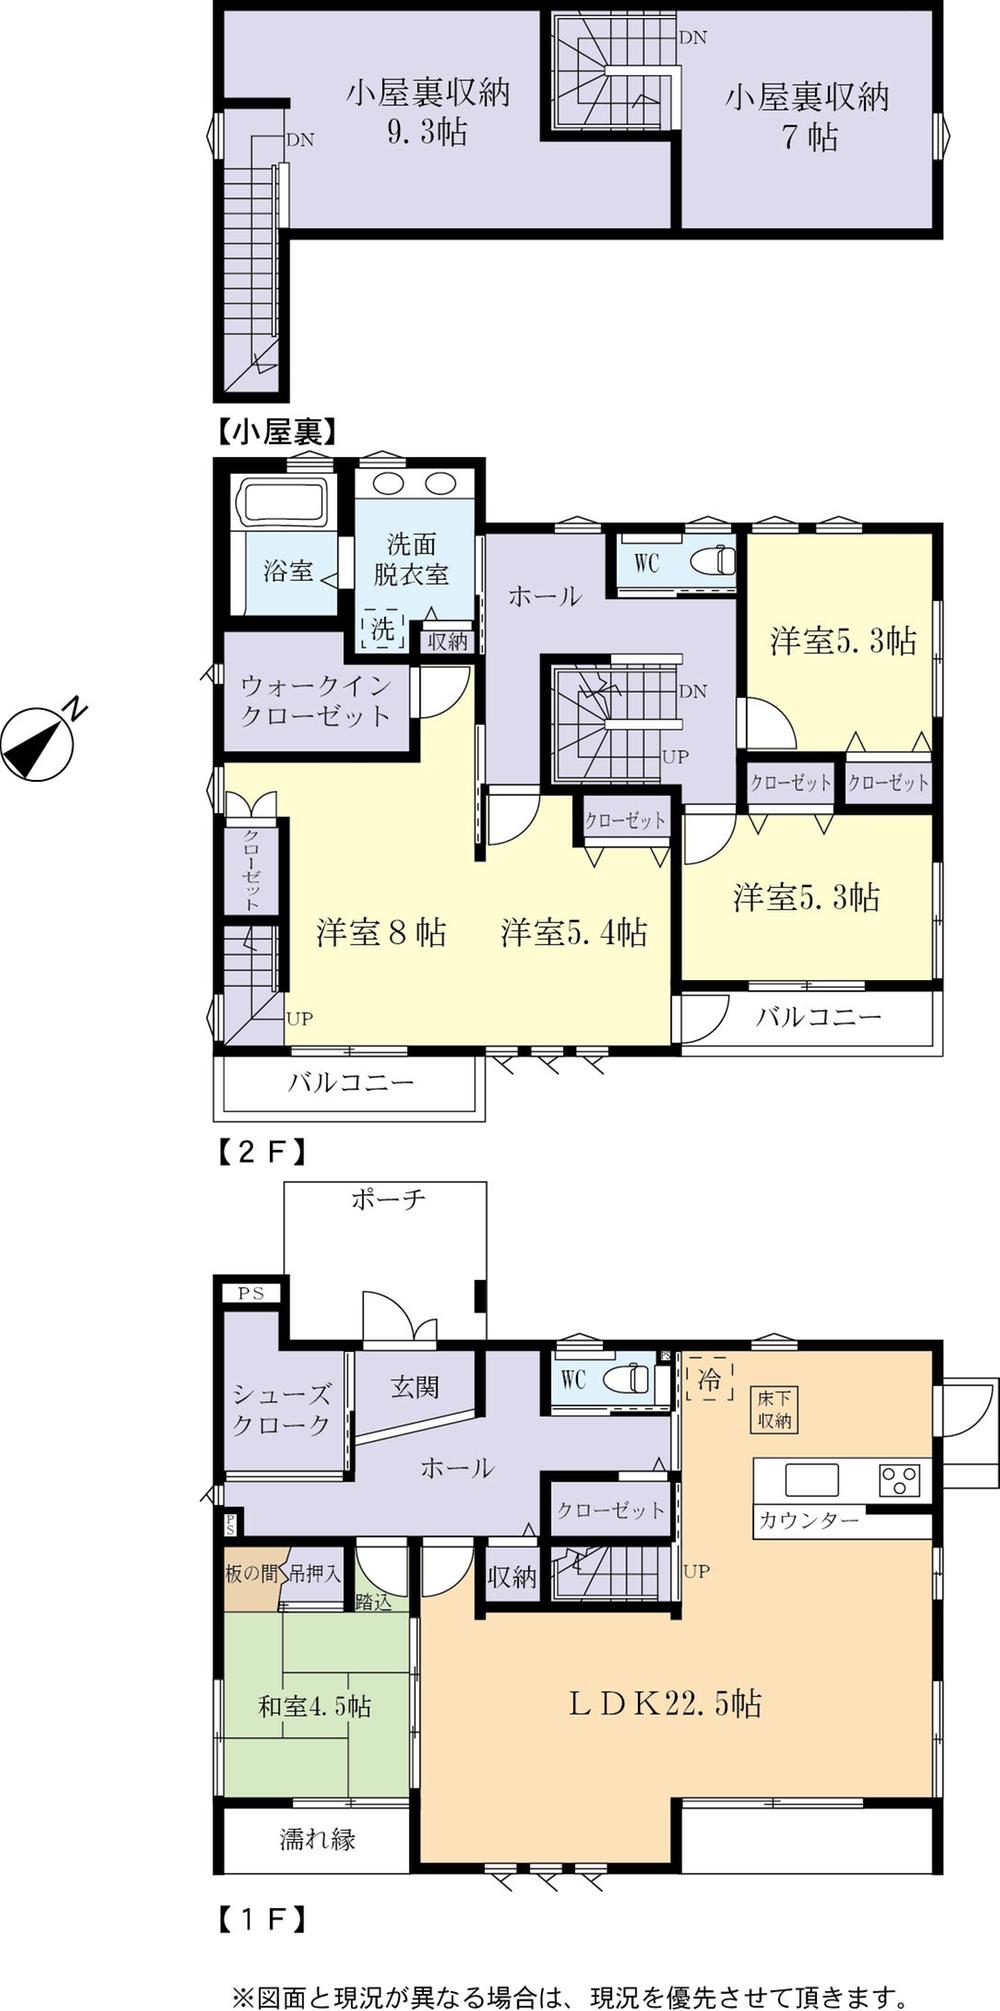 Floor plan. 43,900,000 yen, 4LDK + 2S (storeroom), Land area 200.14 sq m , Building area 140.77 sq m